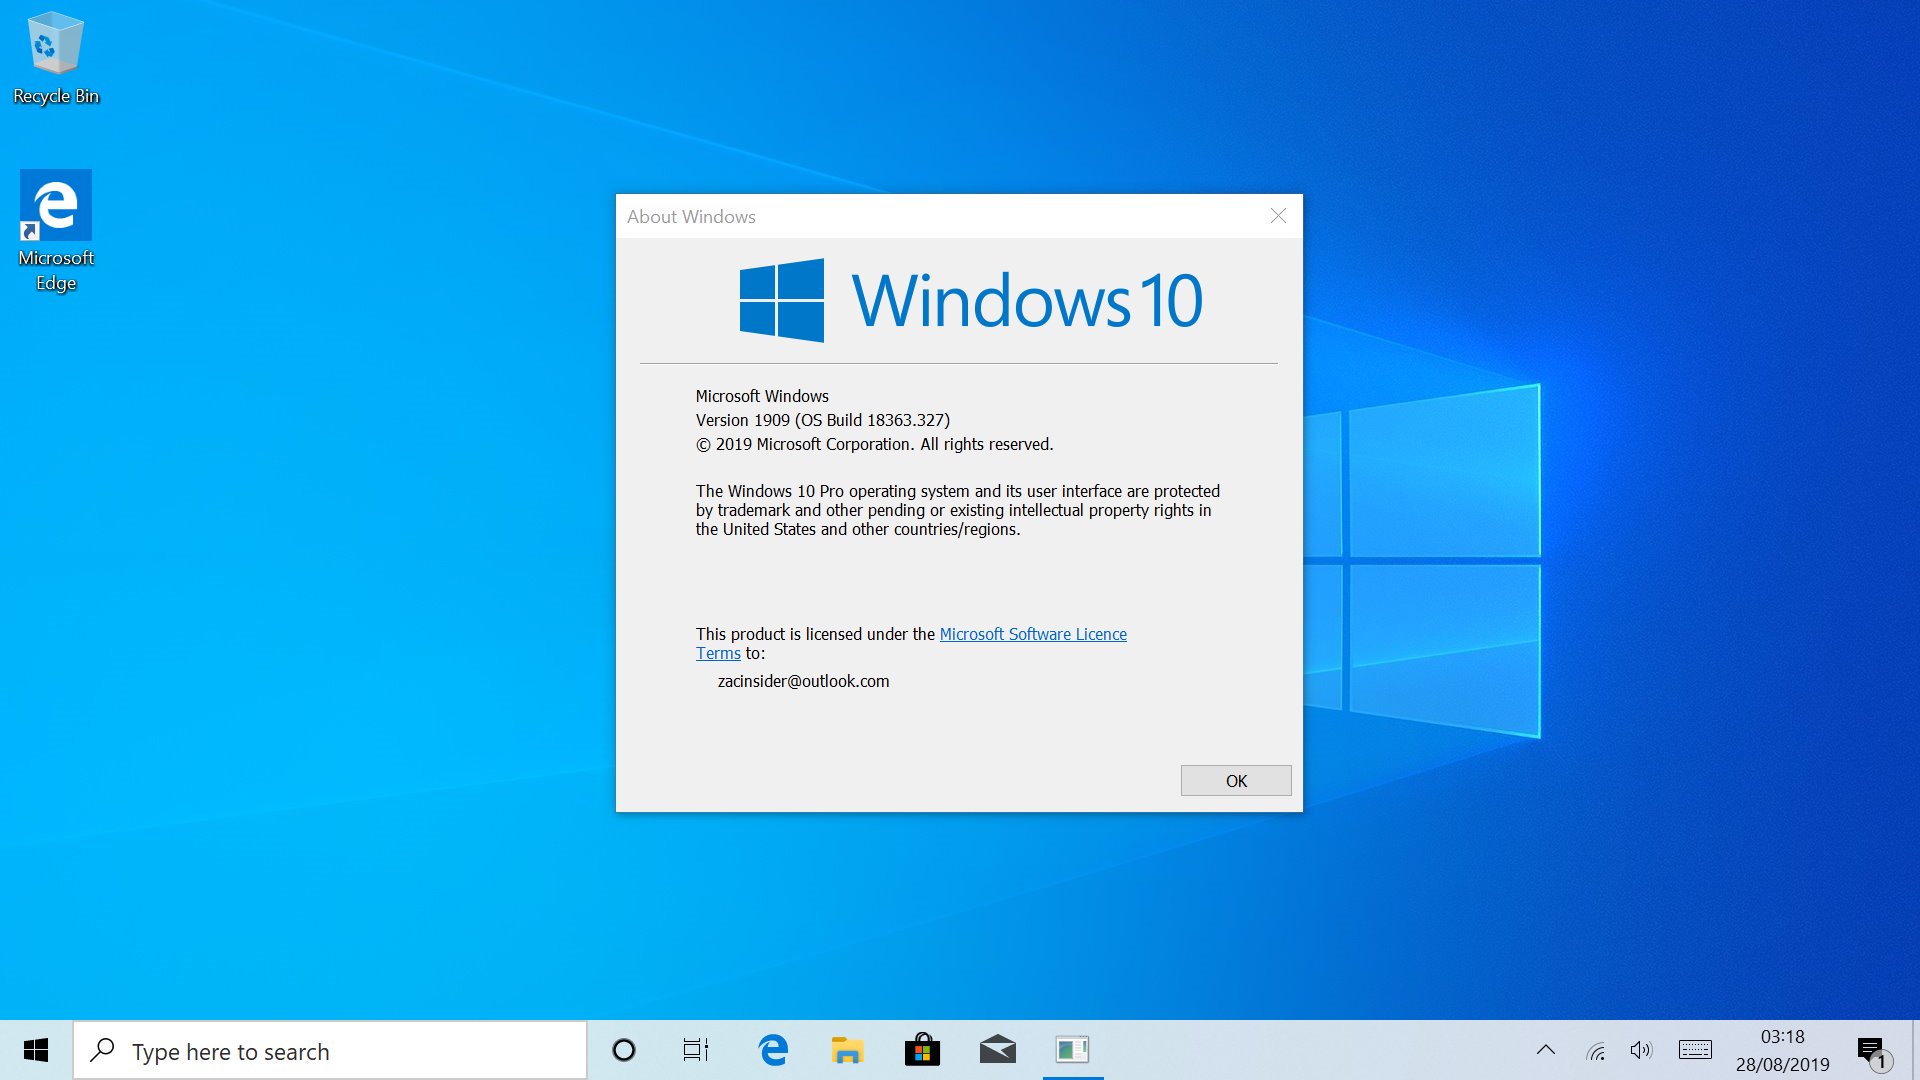 Kak windows 10. Windows 10 Pro 21h1. Windows 10 версия 1909. Windows 10, версия 20h2. Windows 10 версия 1903.